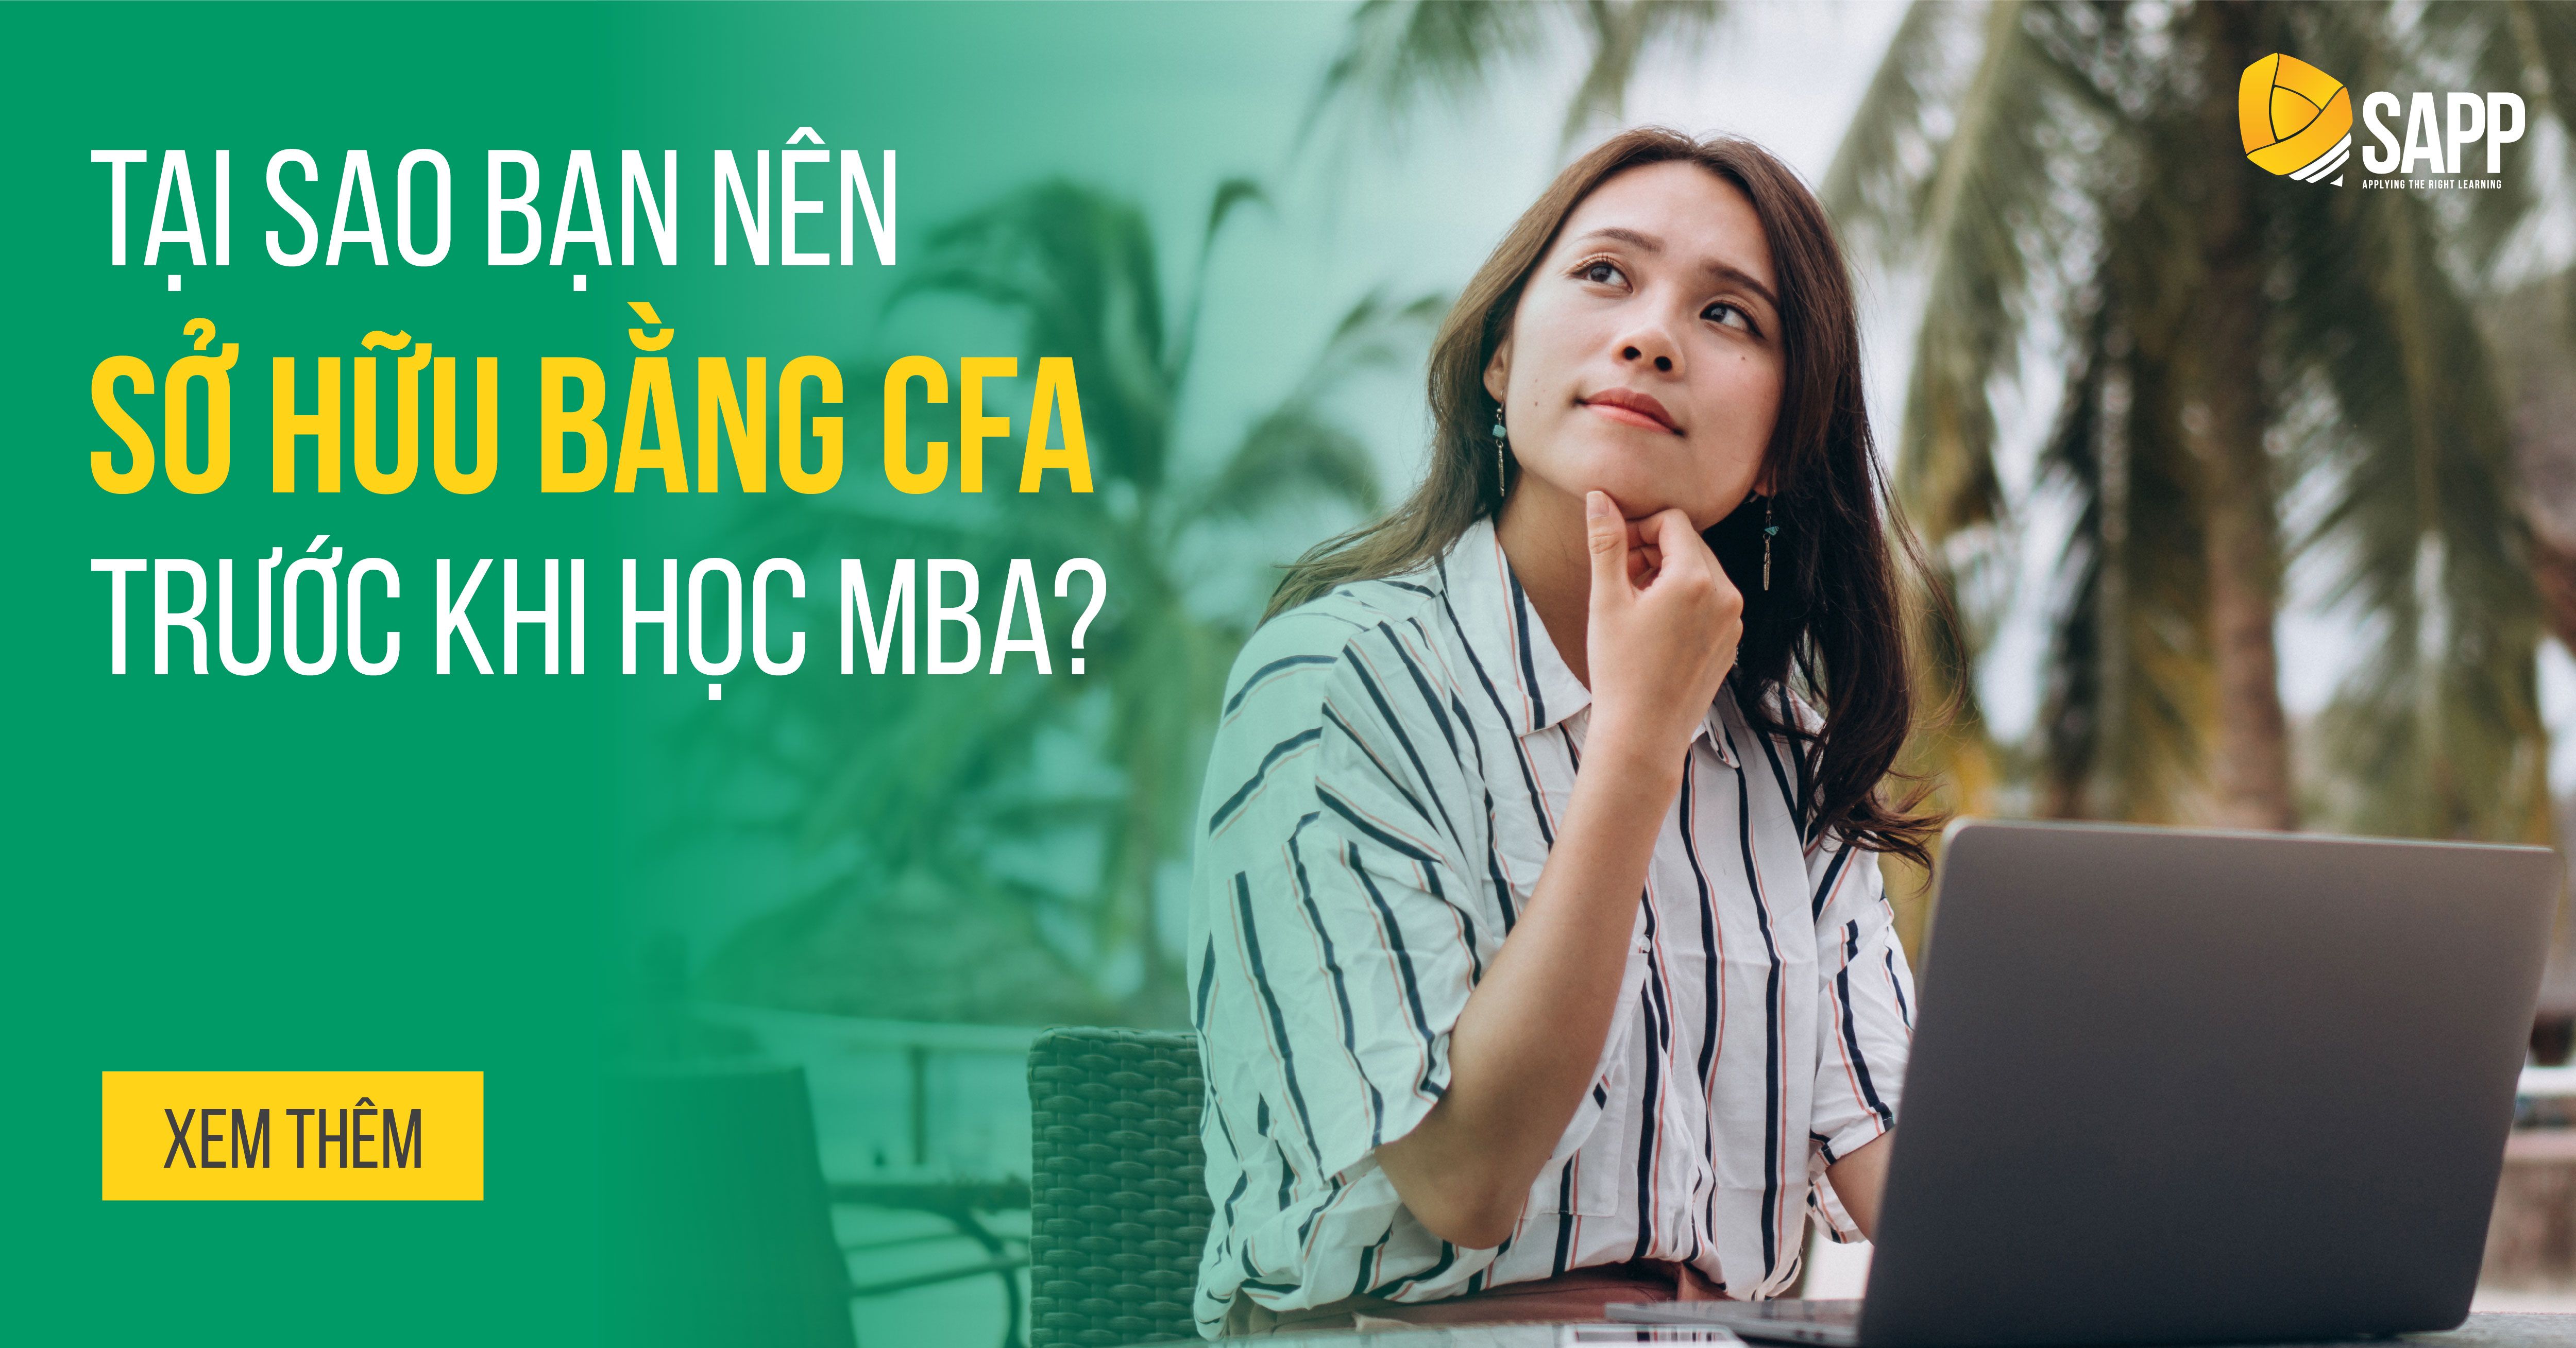 Tại Sao Bạn Nên Sở Hữu Bằng CFA Trước Khi Học MBA?